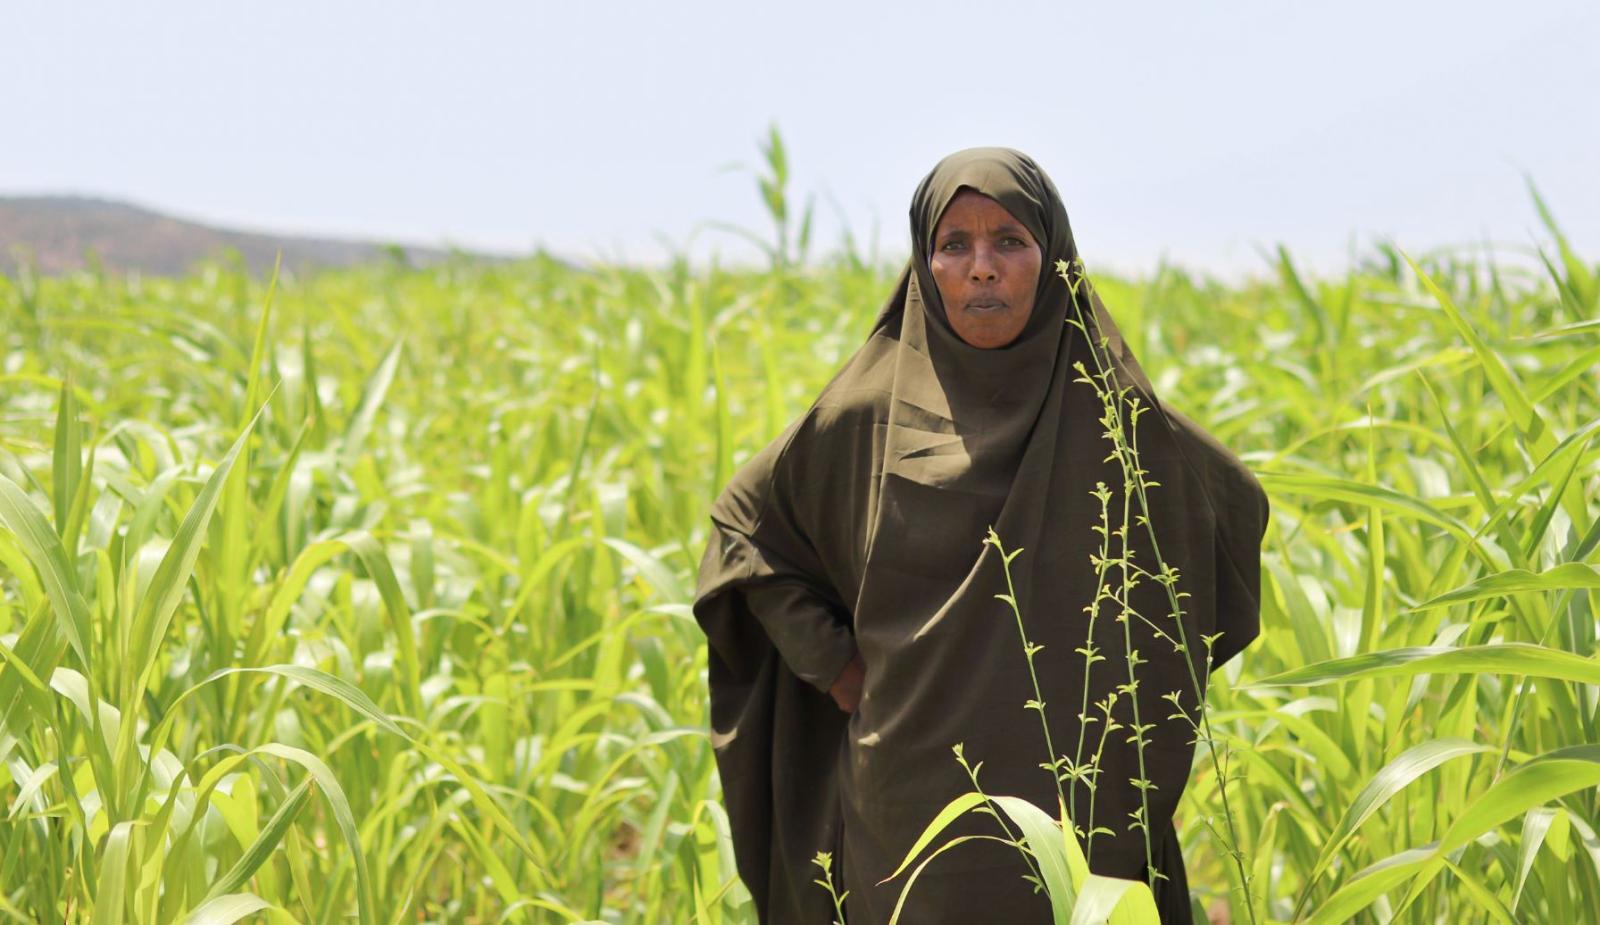 Frau mit religiöser Kopfbedeckung steht im Maisfeld für ein Porträt